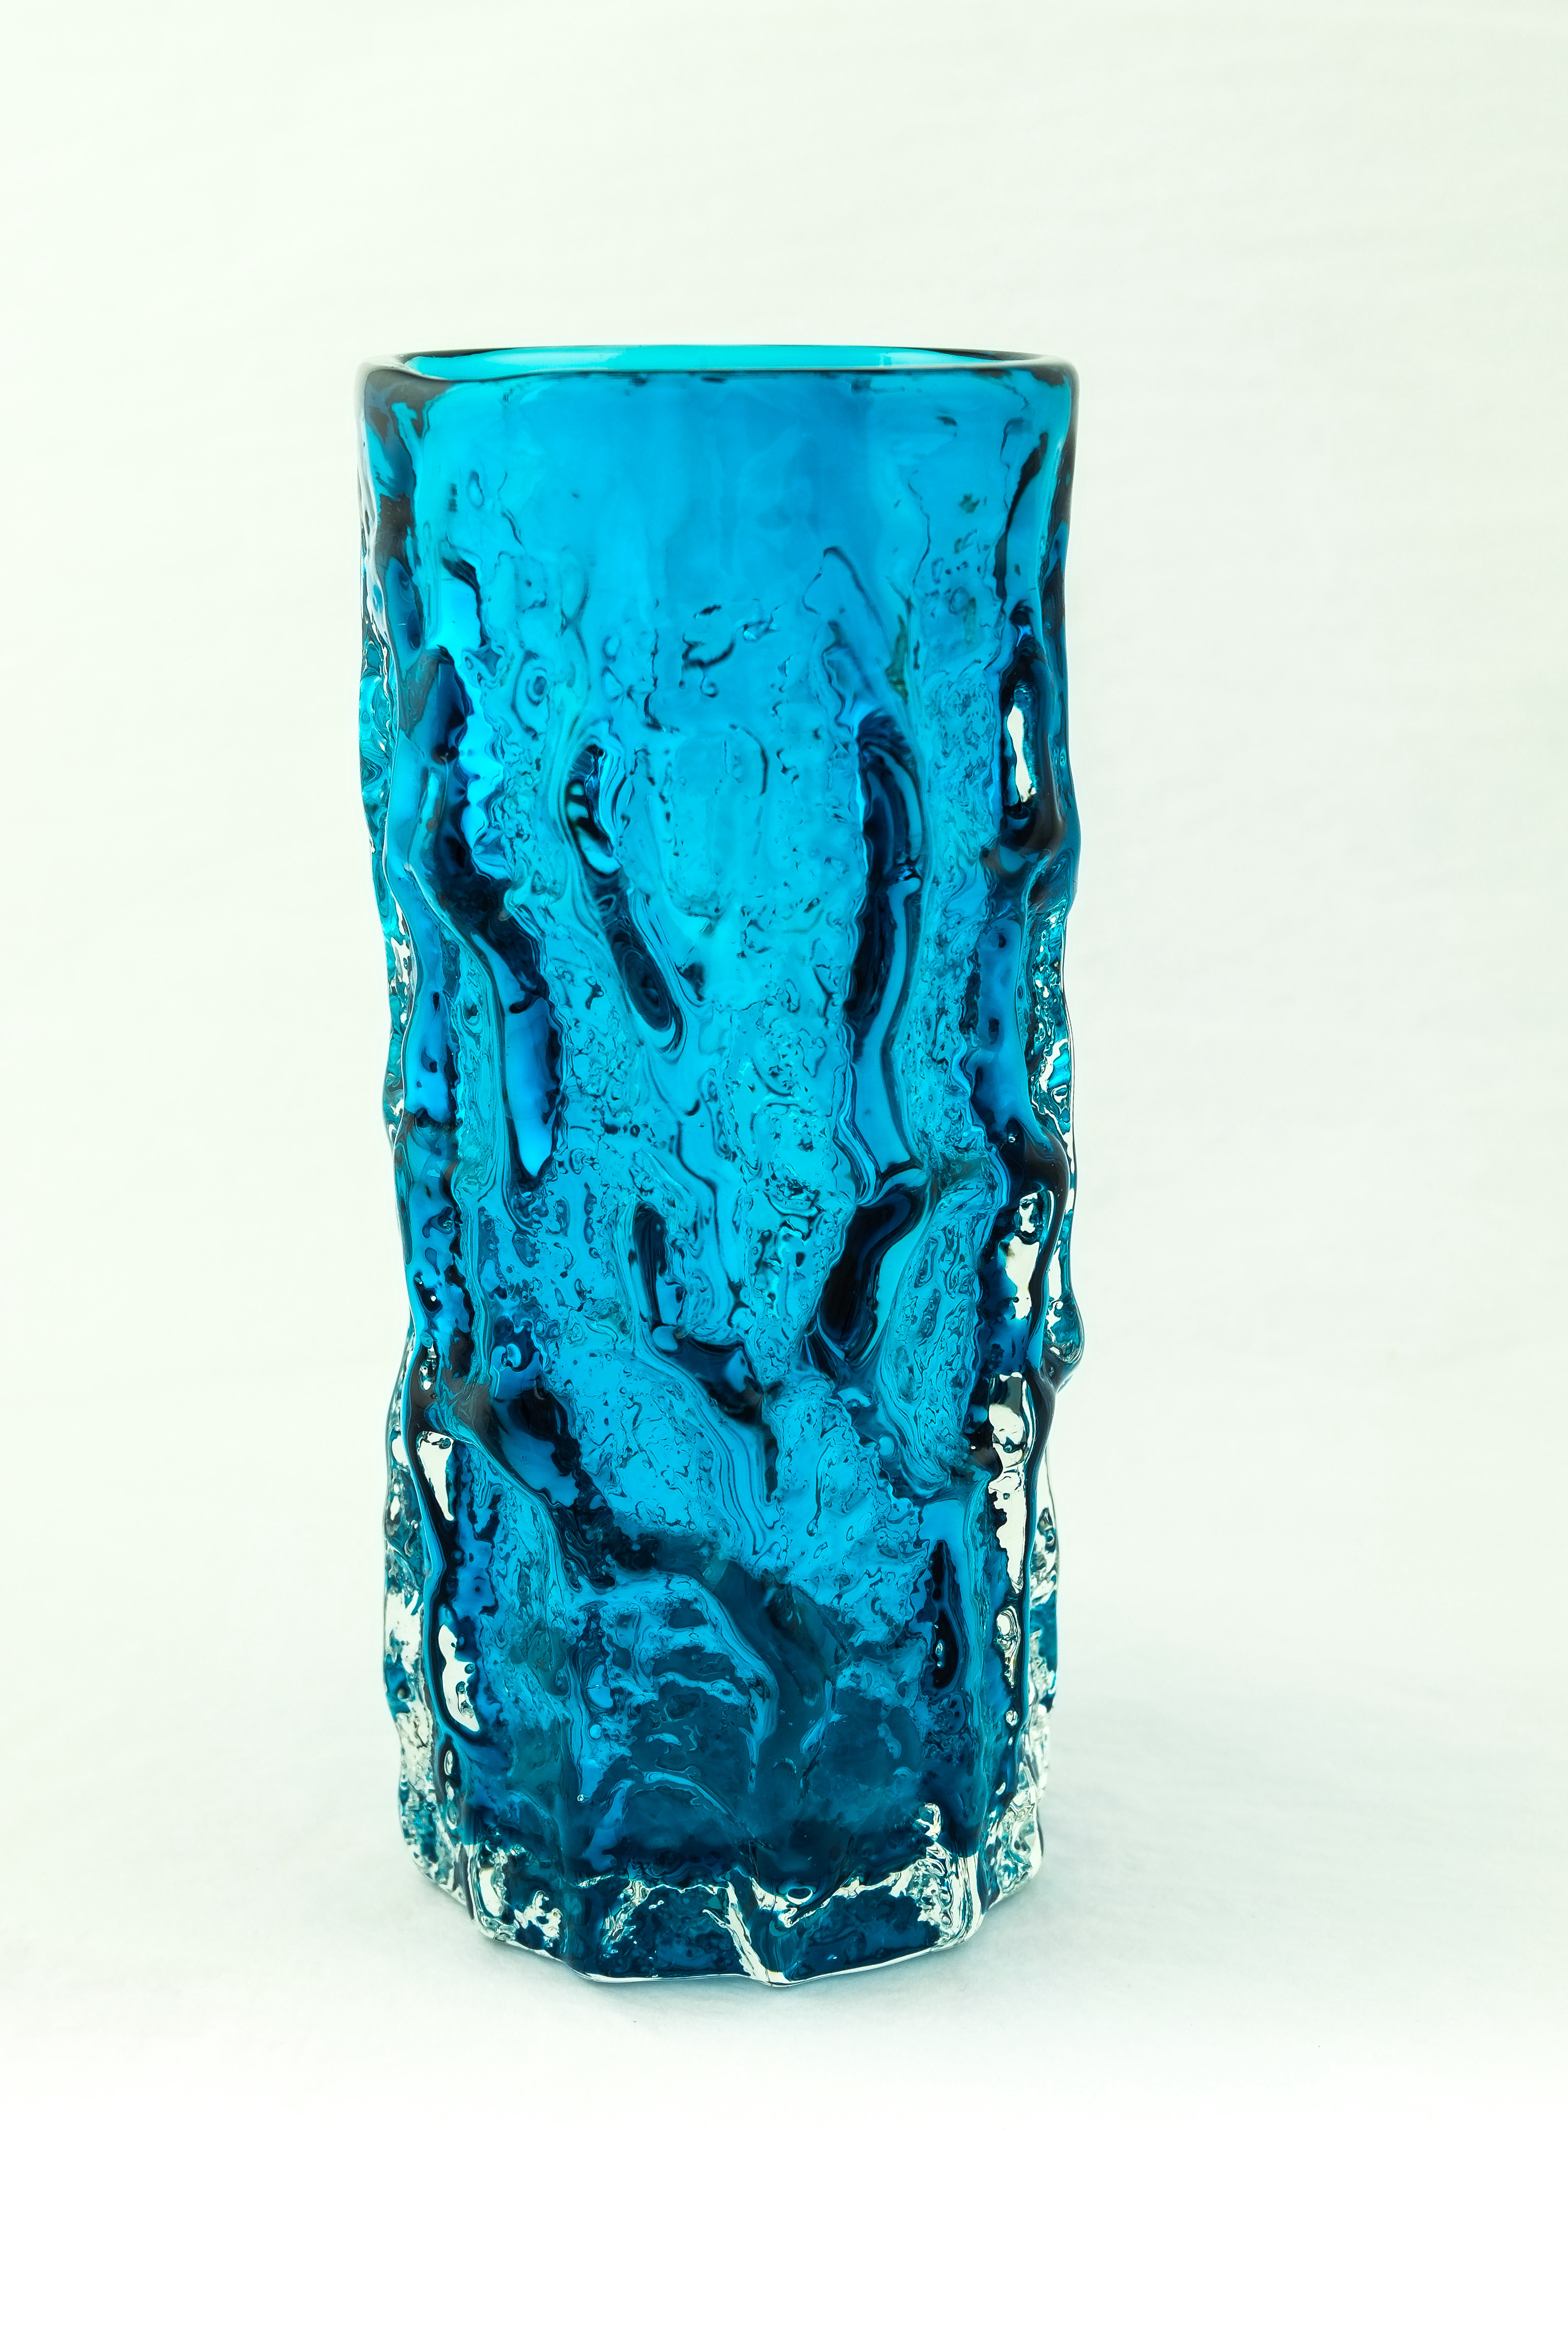 Image of 6" Bark Vase - Kingfisher